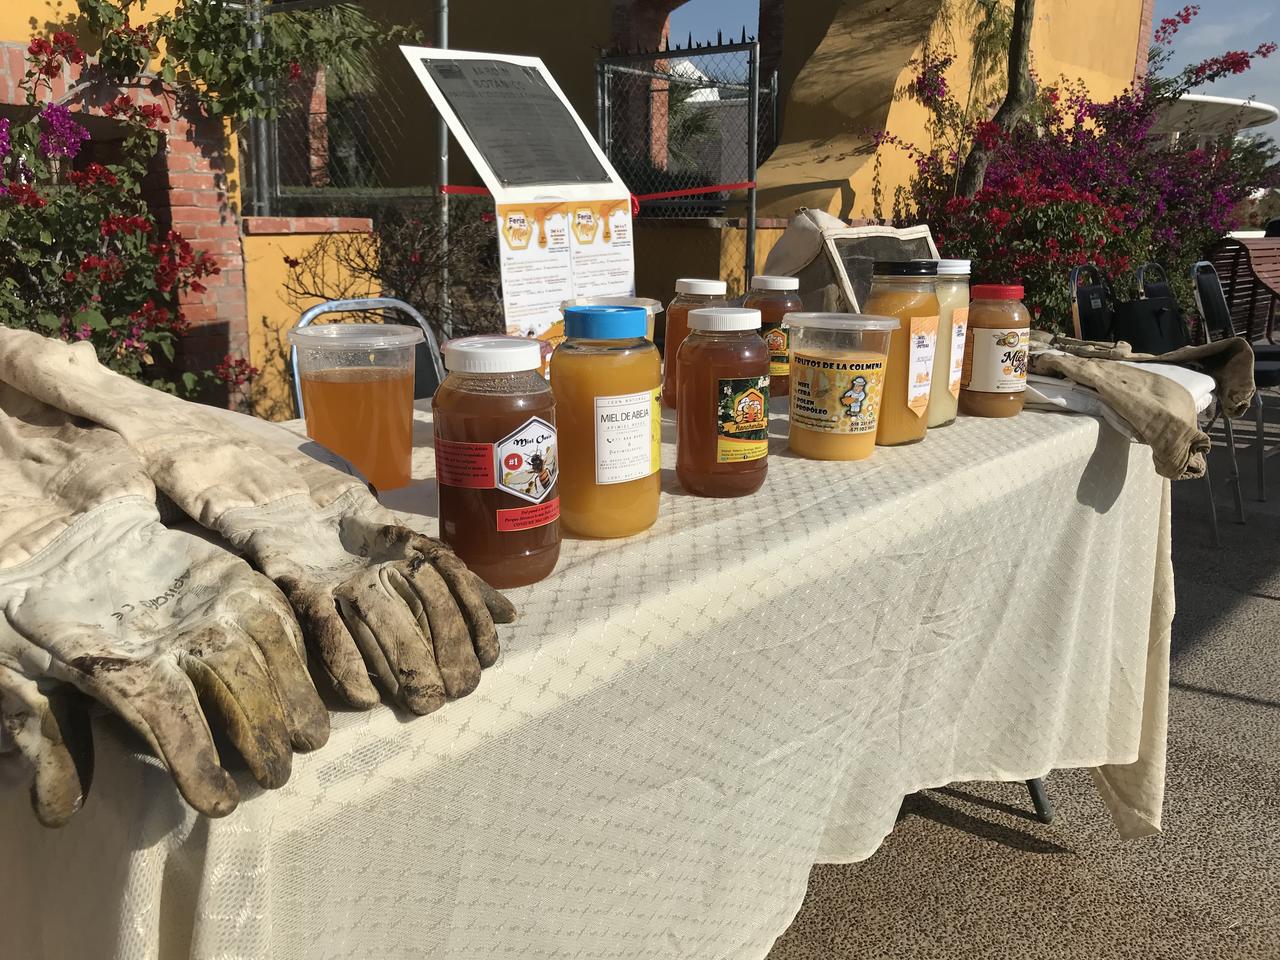 Con el propósito de fomentar el consumo de los apicultores laguneros en la región, se organizó la segunda Feria de la Miel en Gómez Palacio, como una alternativa a la crisis por la que atraviesan y que pone en riesgo su actividad.